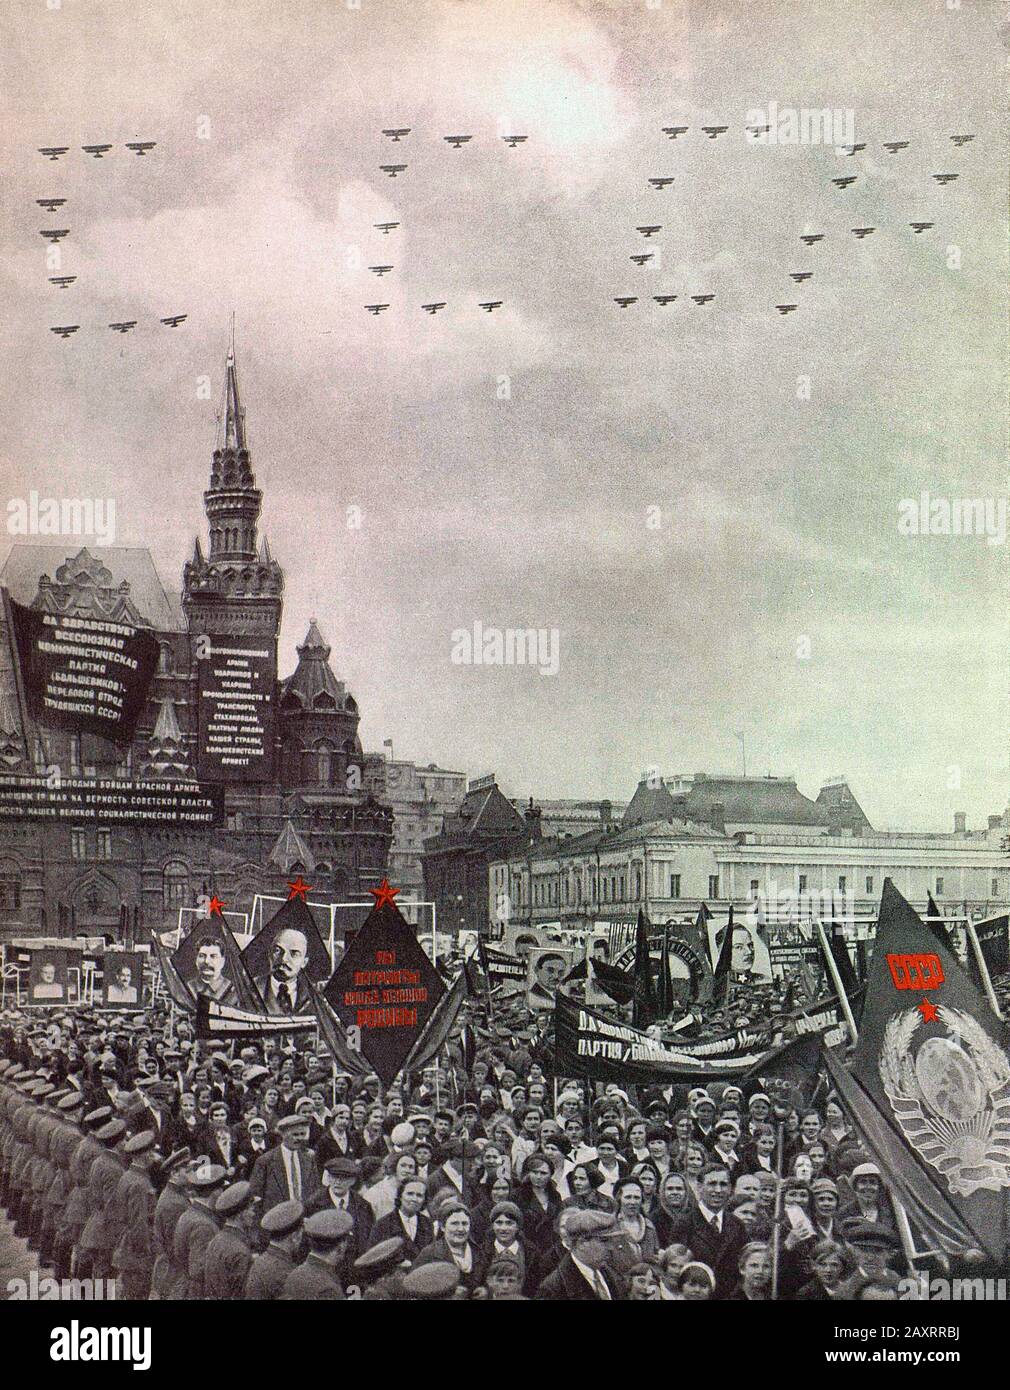 Esercito Rosso. Dal libro di propaganda sovietico del 1937. Dimostrazione del popolo sovietico sulla Piazza Rossa a Mosca. Foto Stock